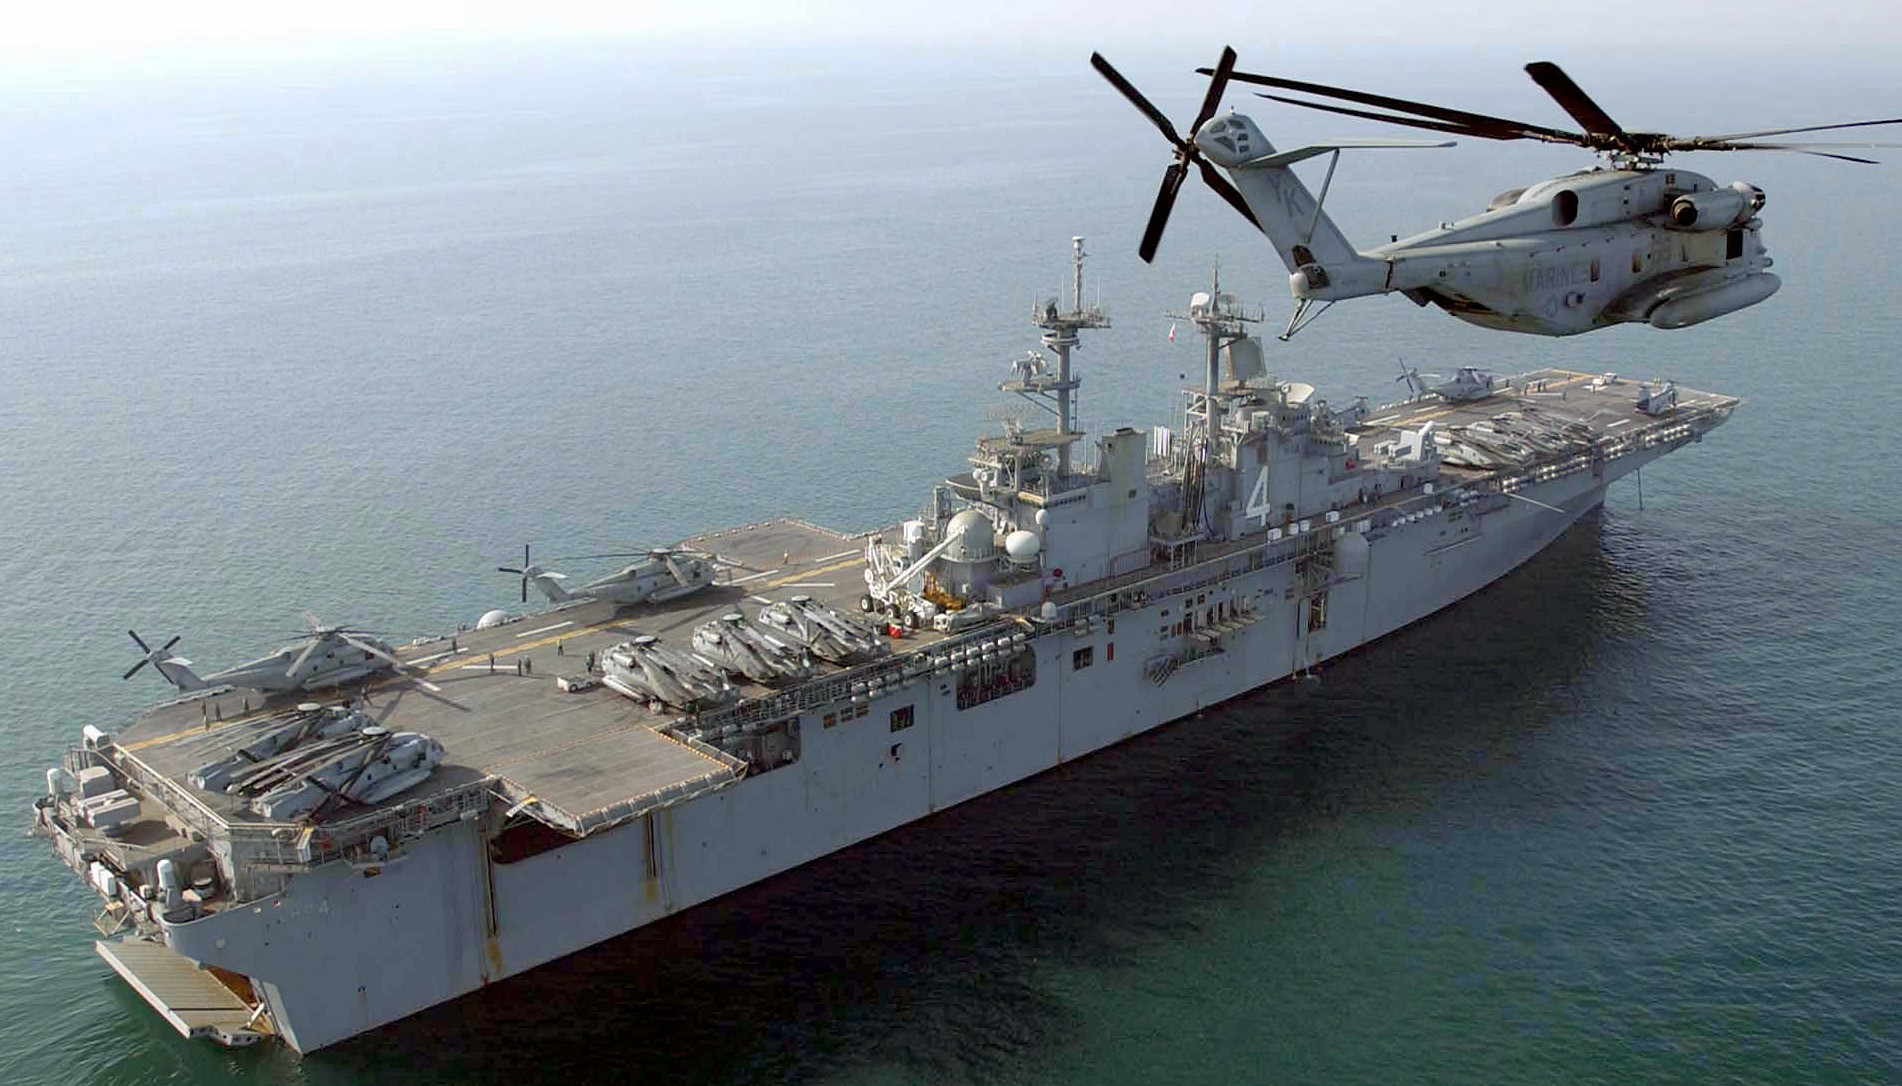 lhd-4 uss boxer wasp class amphibious assault ship dock landing us navy hmh-466 centcom 17